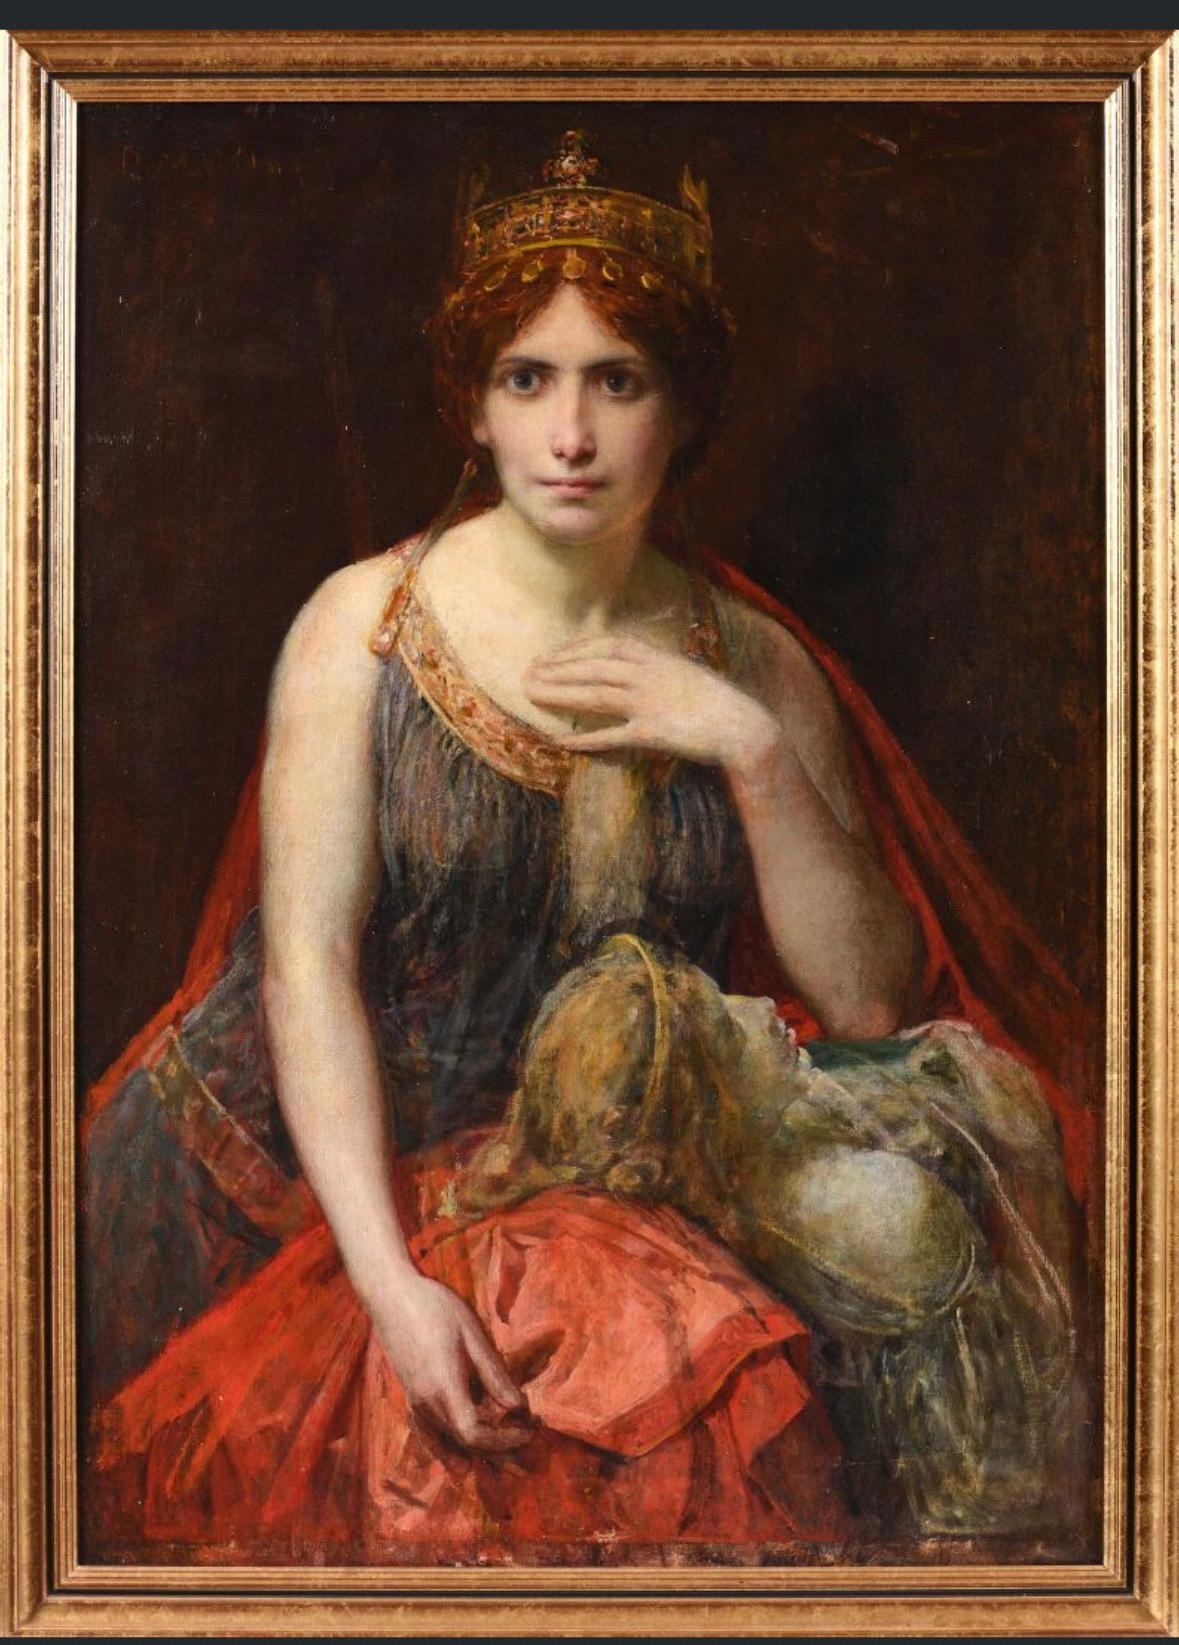 Französisches symbolistisches Ölgemälde des 19. Jahrhunderts, Porträt der mythologischen Königin – Painting von Diogenes Maillart